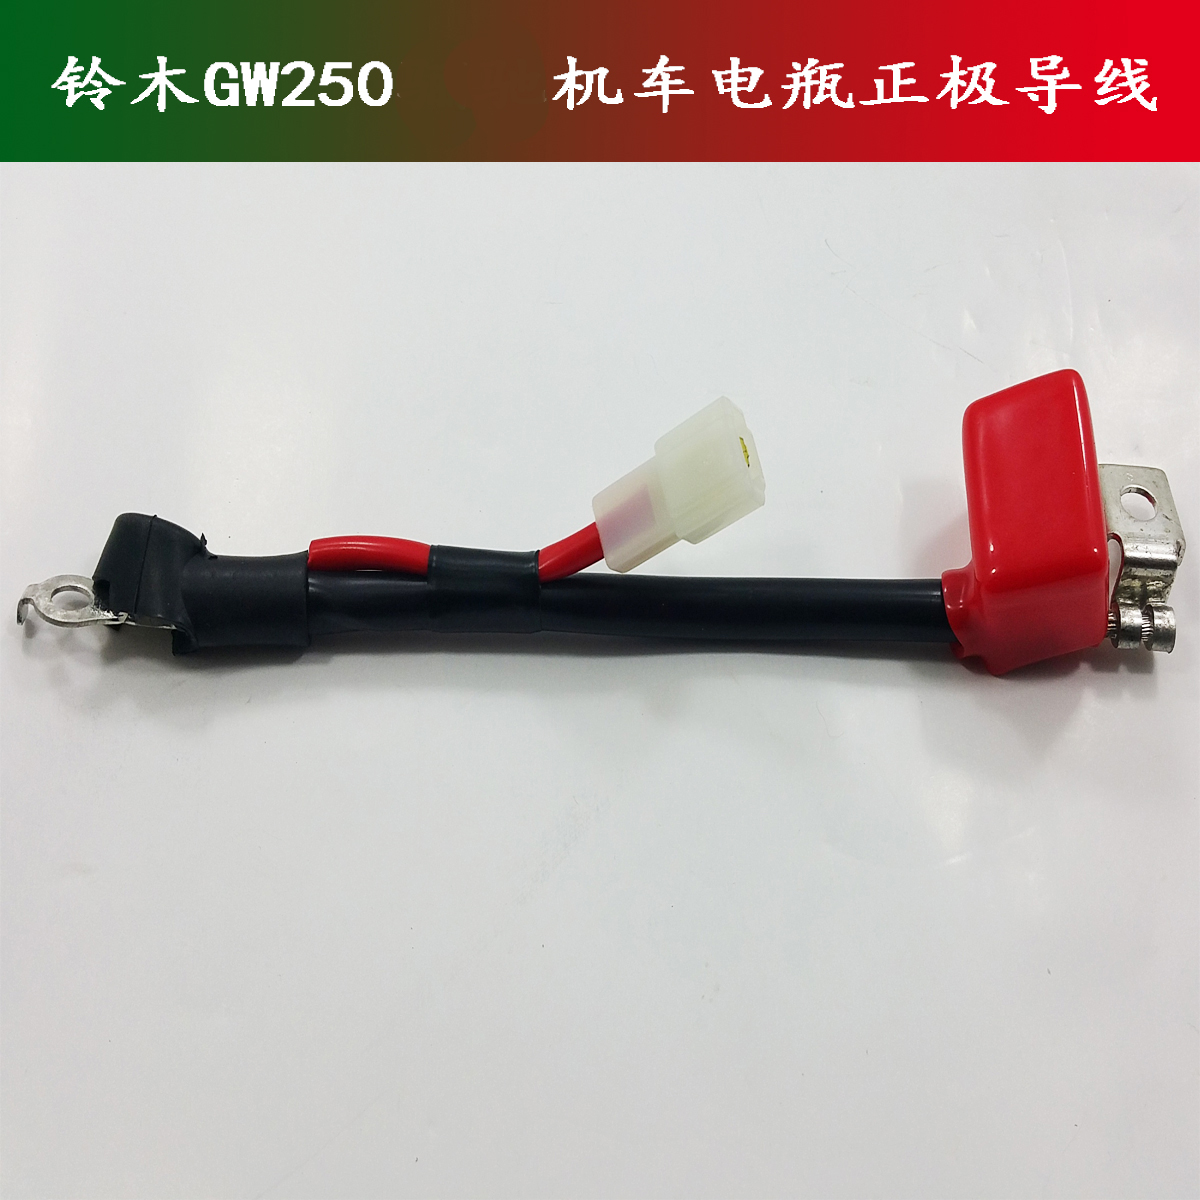 GW250摩托车启动电机导线电瓶连接线电瓶线马达线电瓶正负线